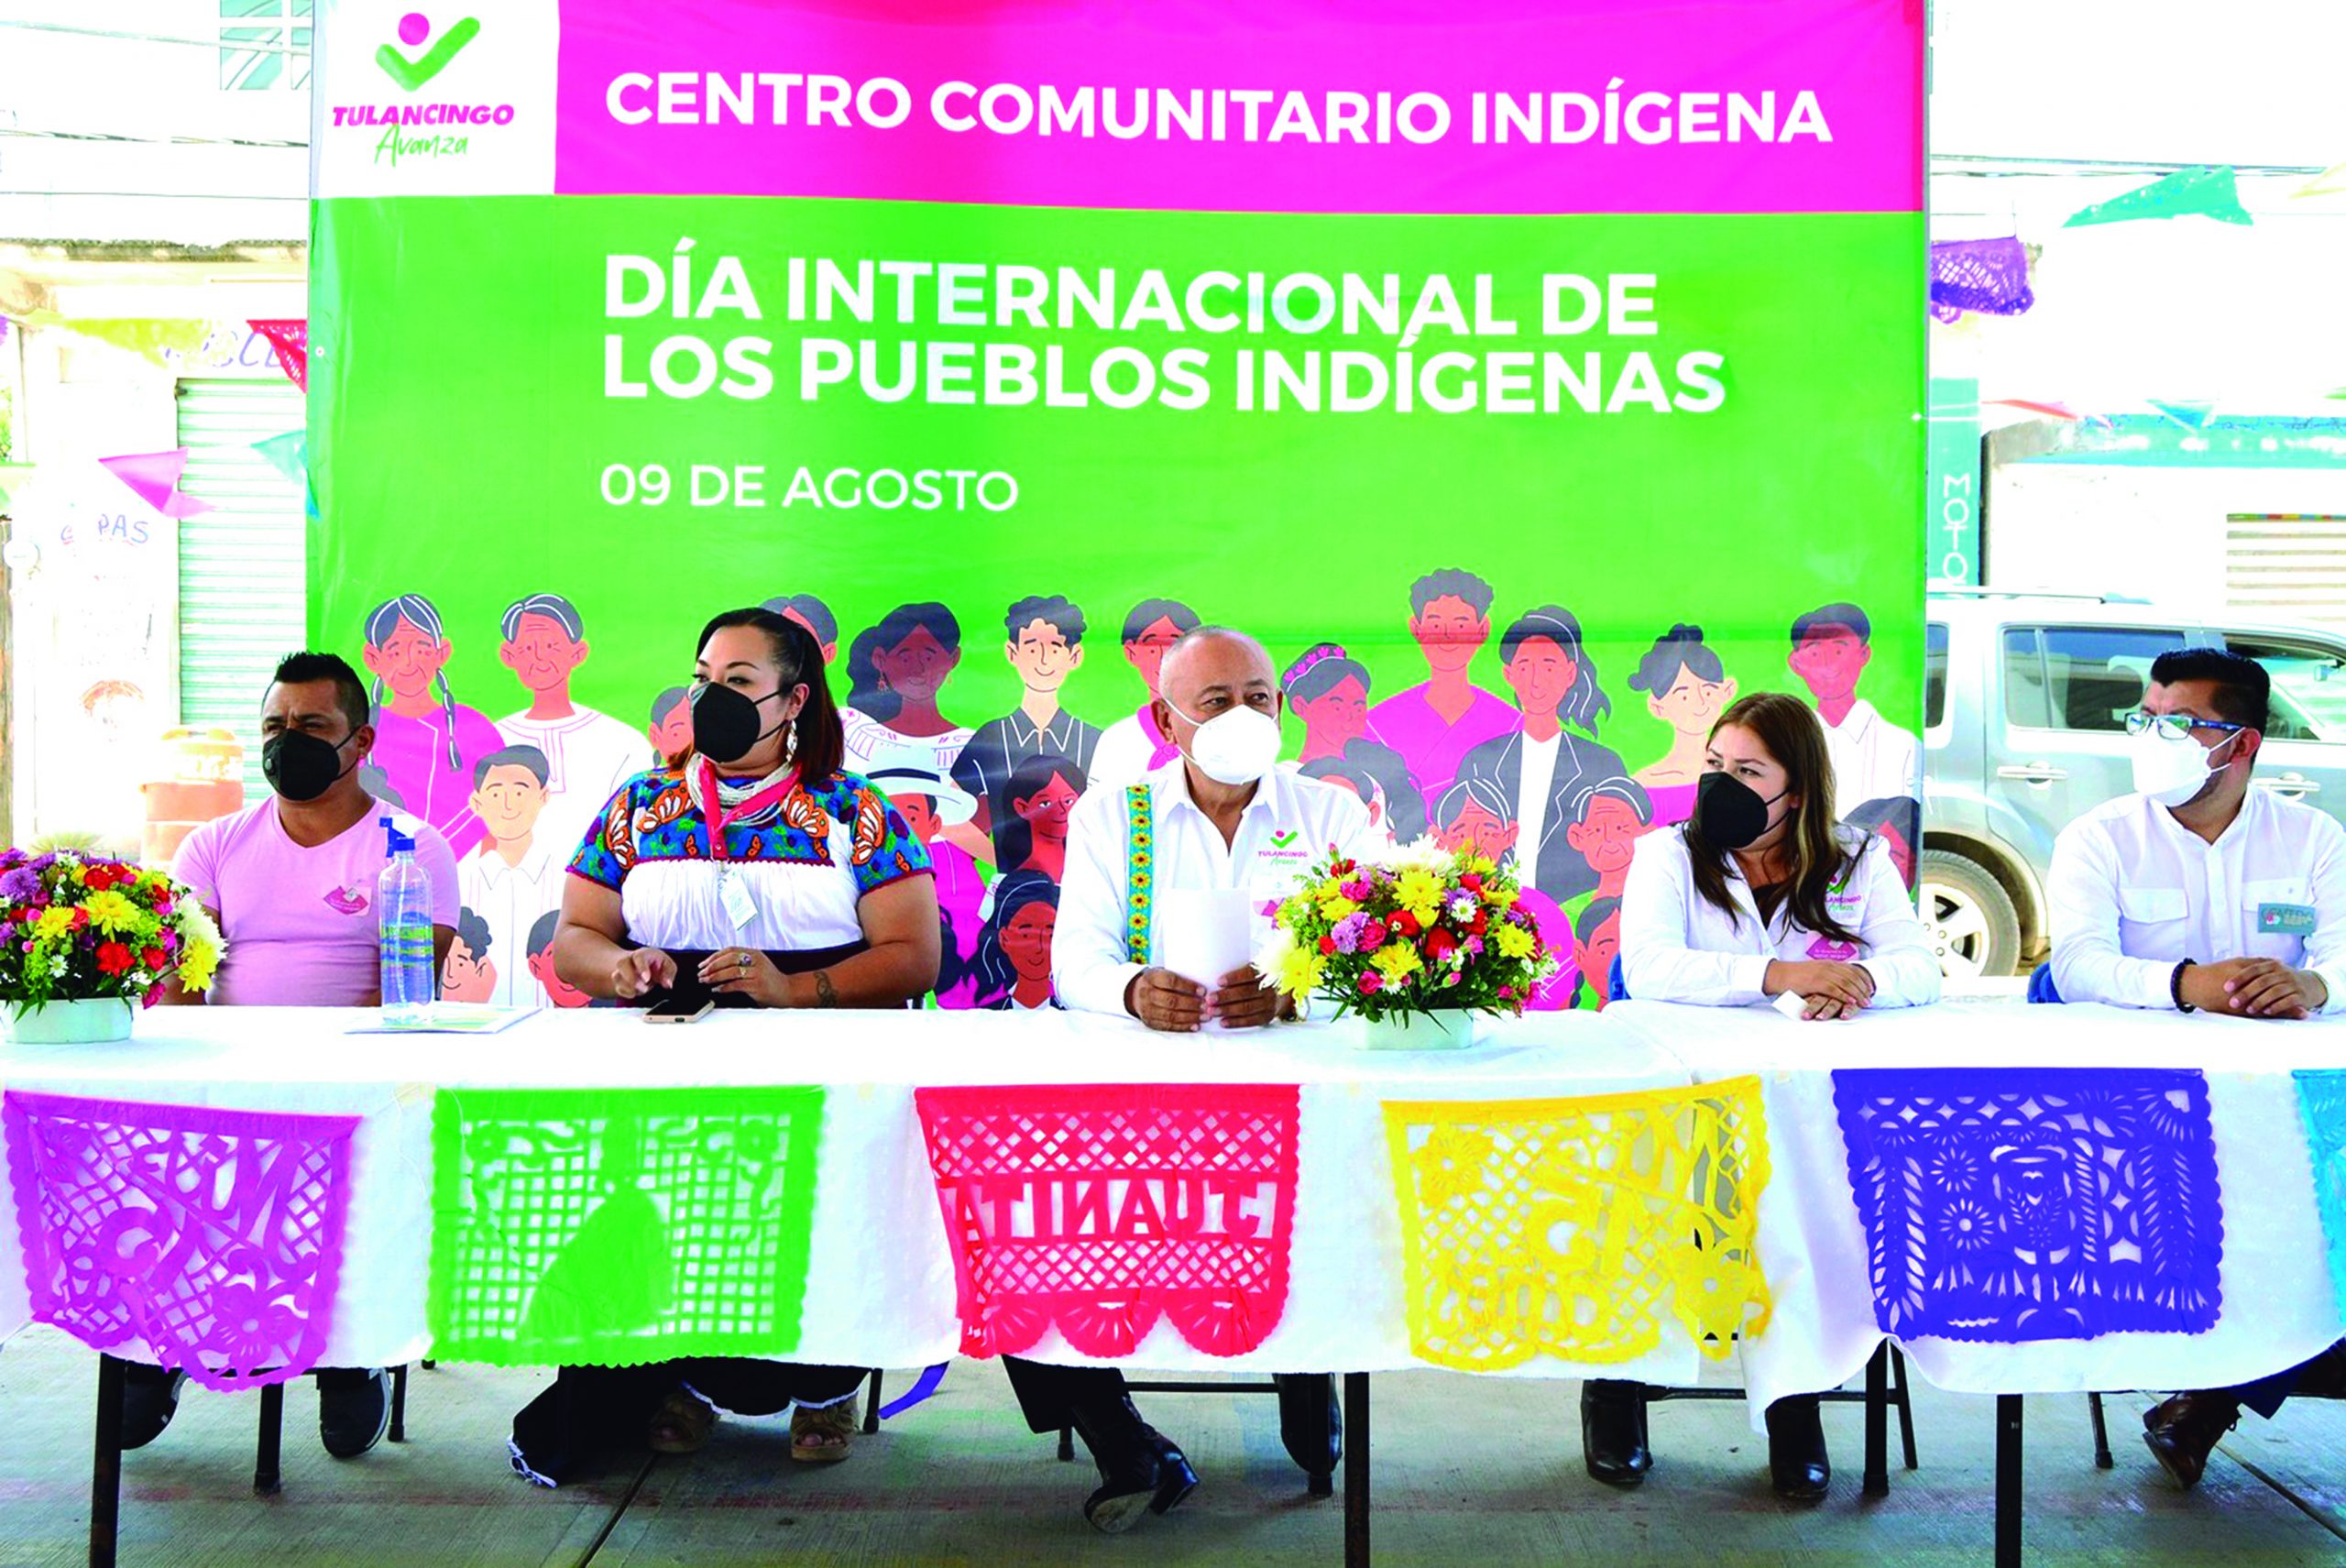 El presidente de Tulancingo Jorge Márquez Alvarado, encabezó en Santa Ana Hueytlalpan, la conmemoración por el Día Internacional de los Pueblos Indígenas, evento durante el cual se presentó el Centro Comunitario Indígena Otomí.